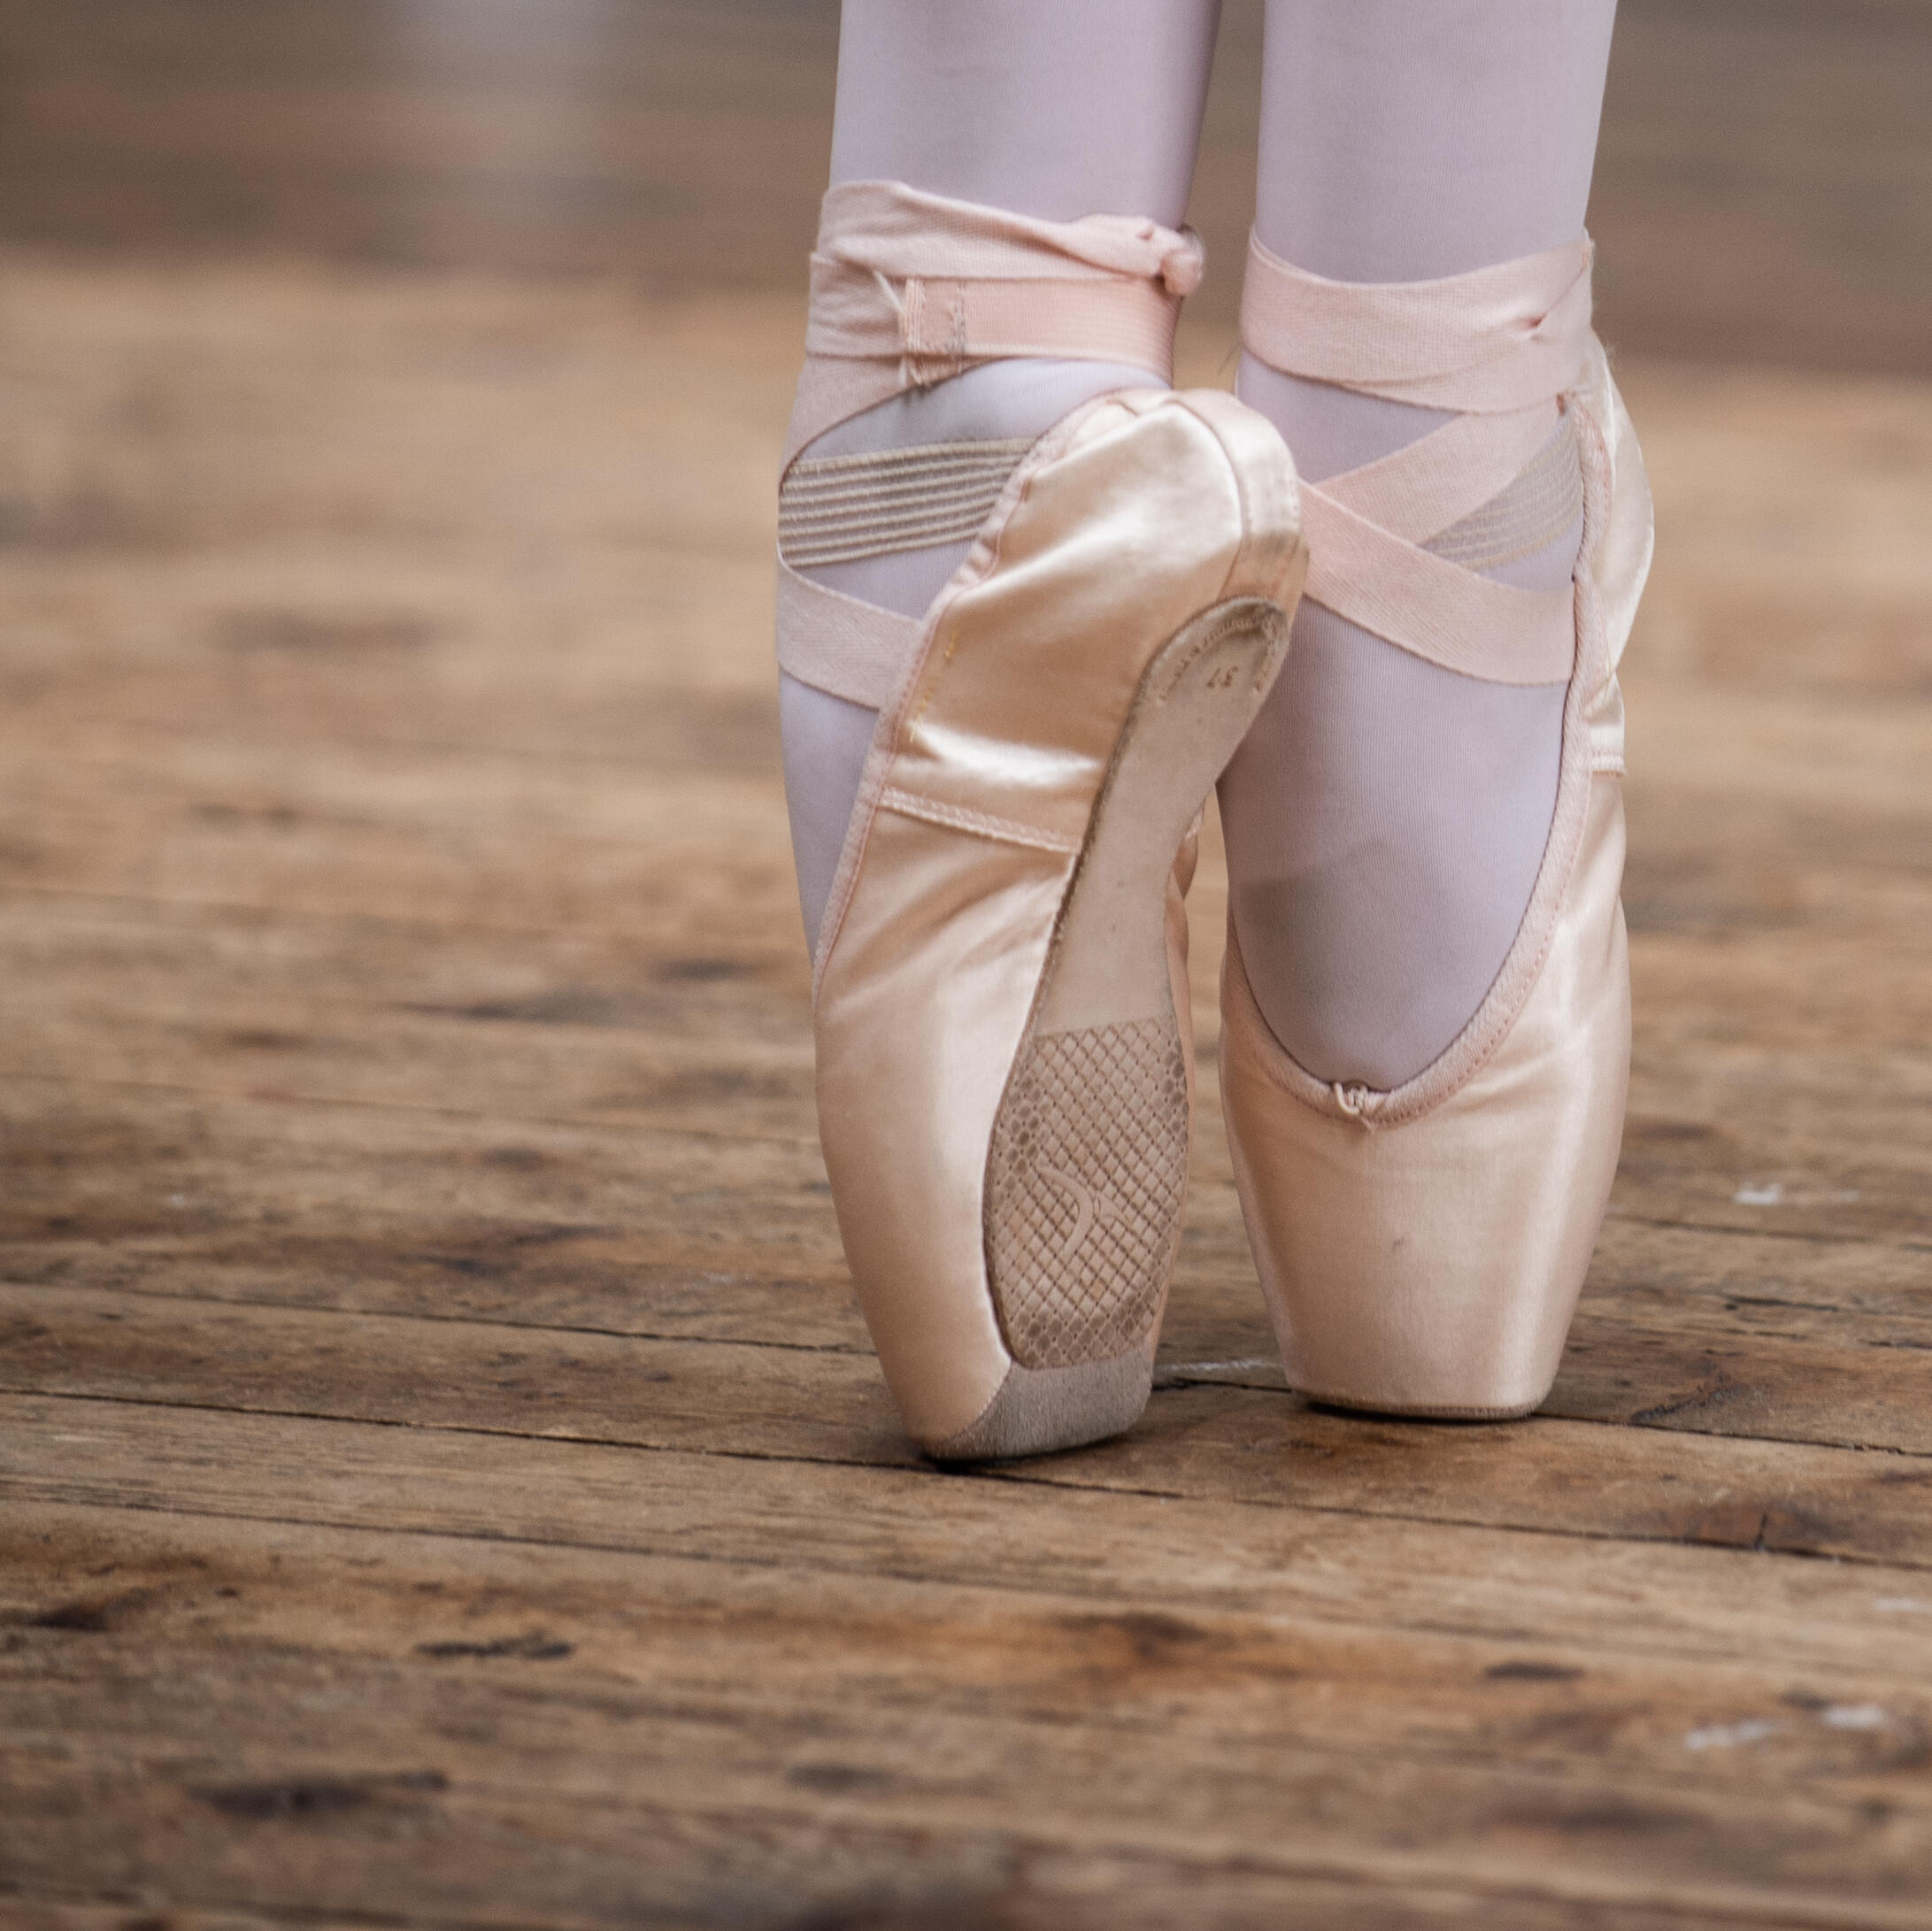 Des conseils pour acheter des chaussons de danse classique